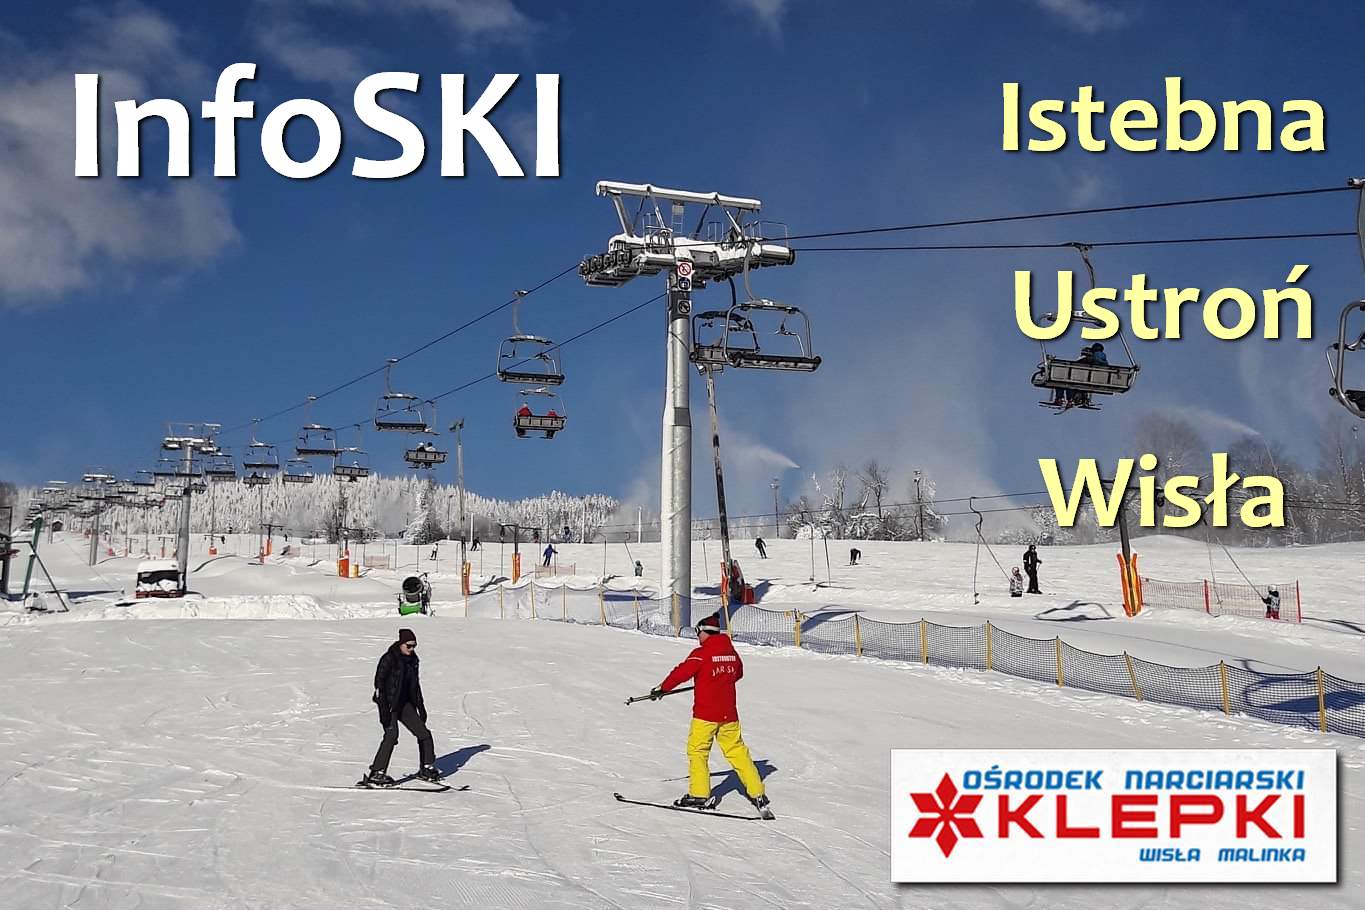 InfoSKI - warunki narciarskie -23.03.2019 